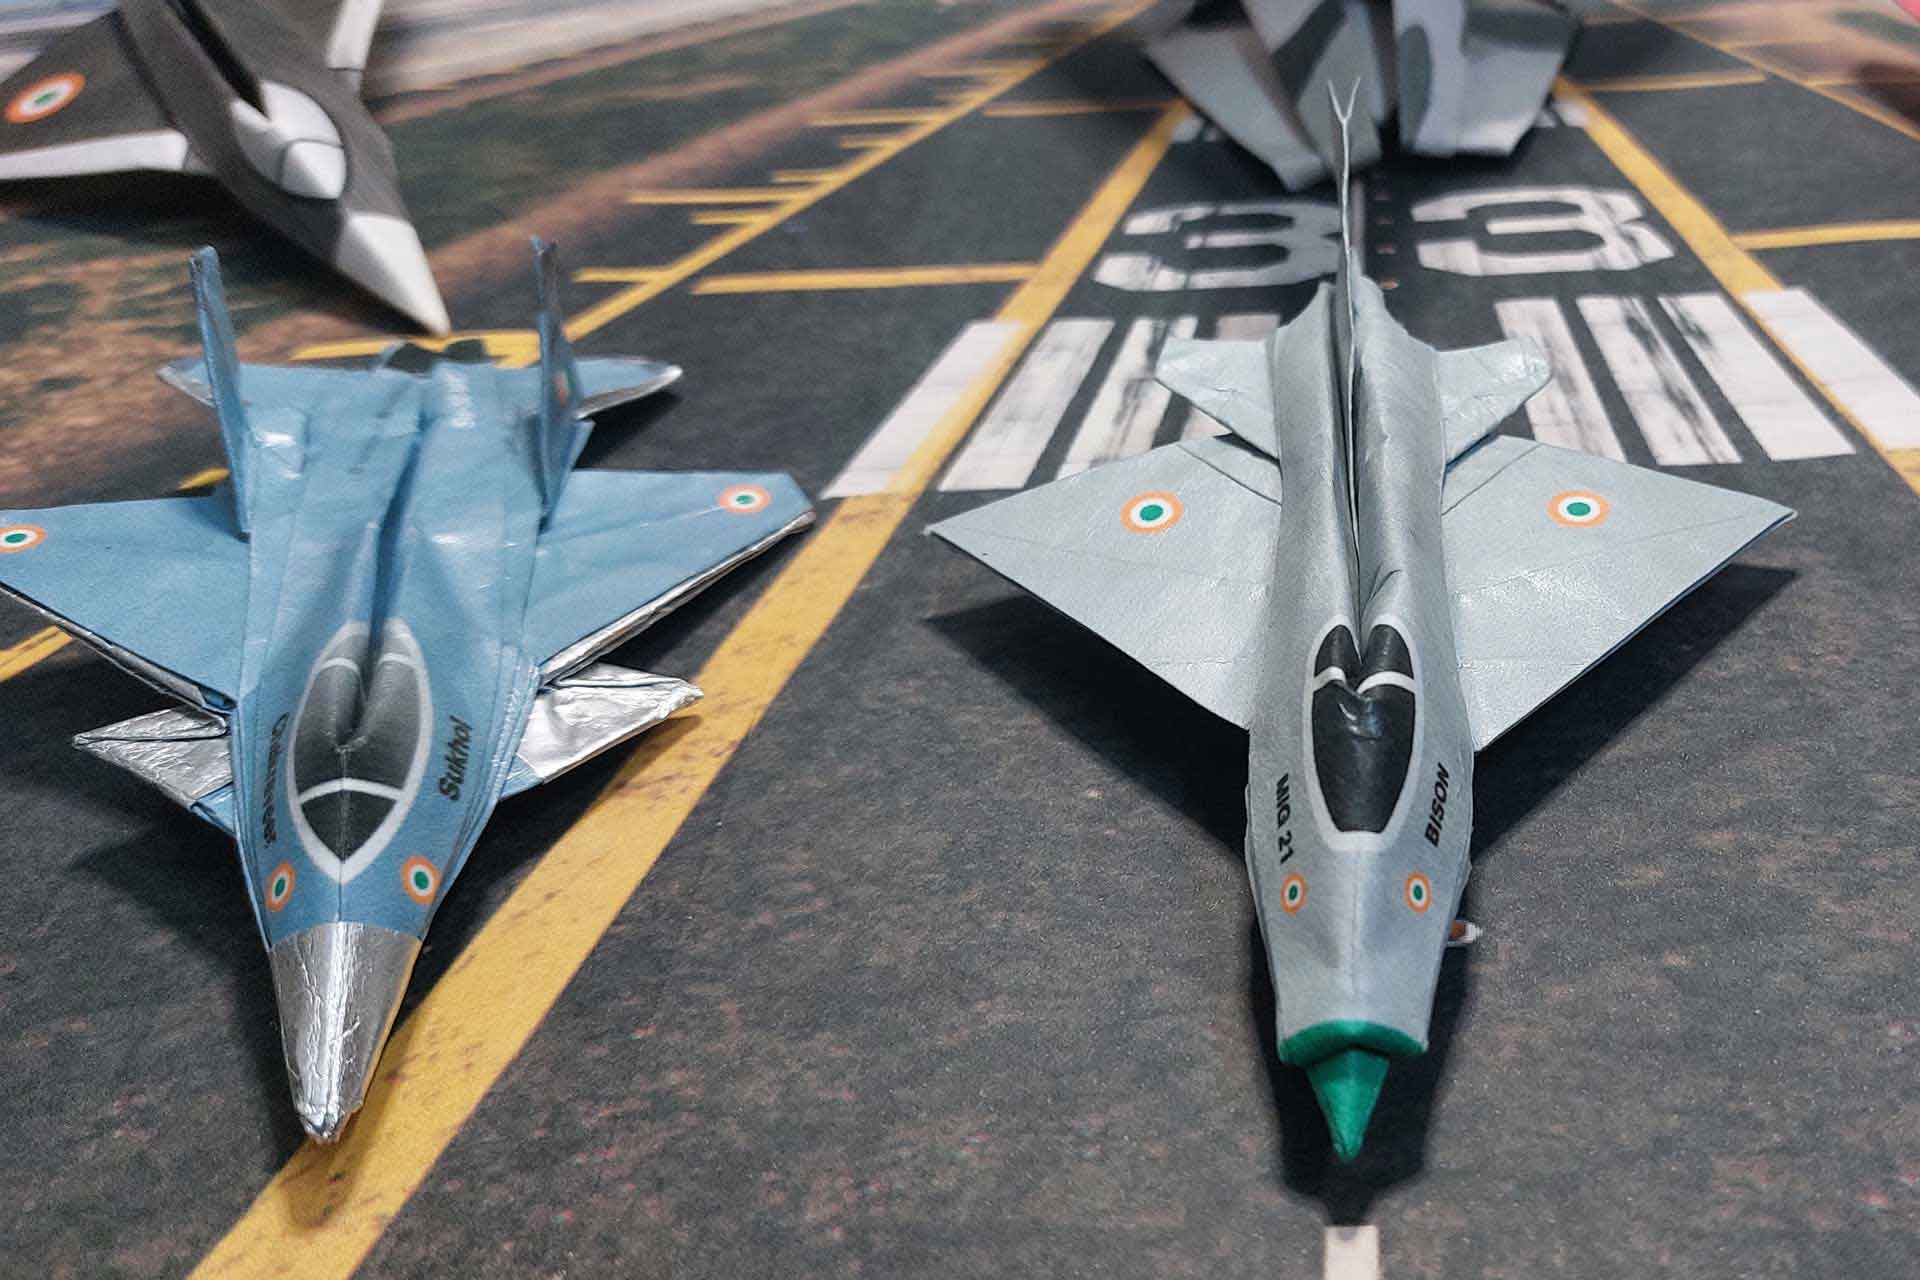 MiG 21 Bison